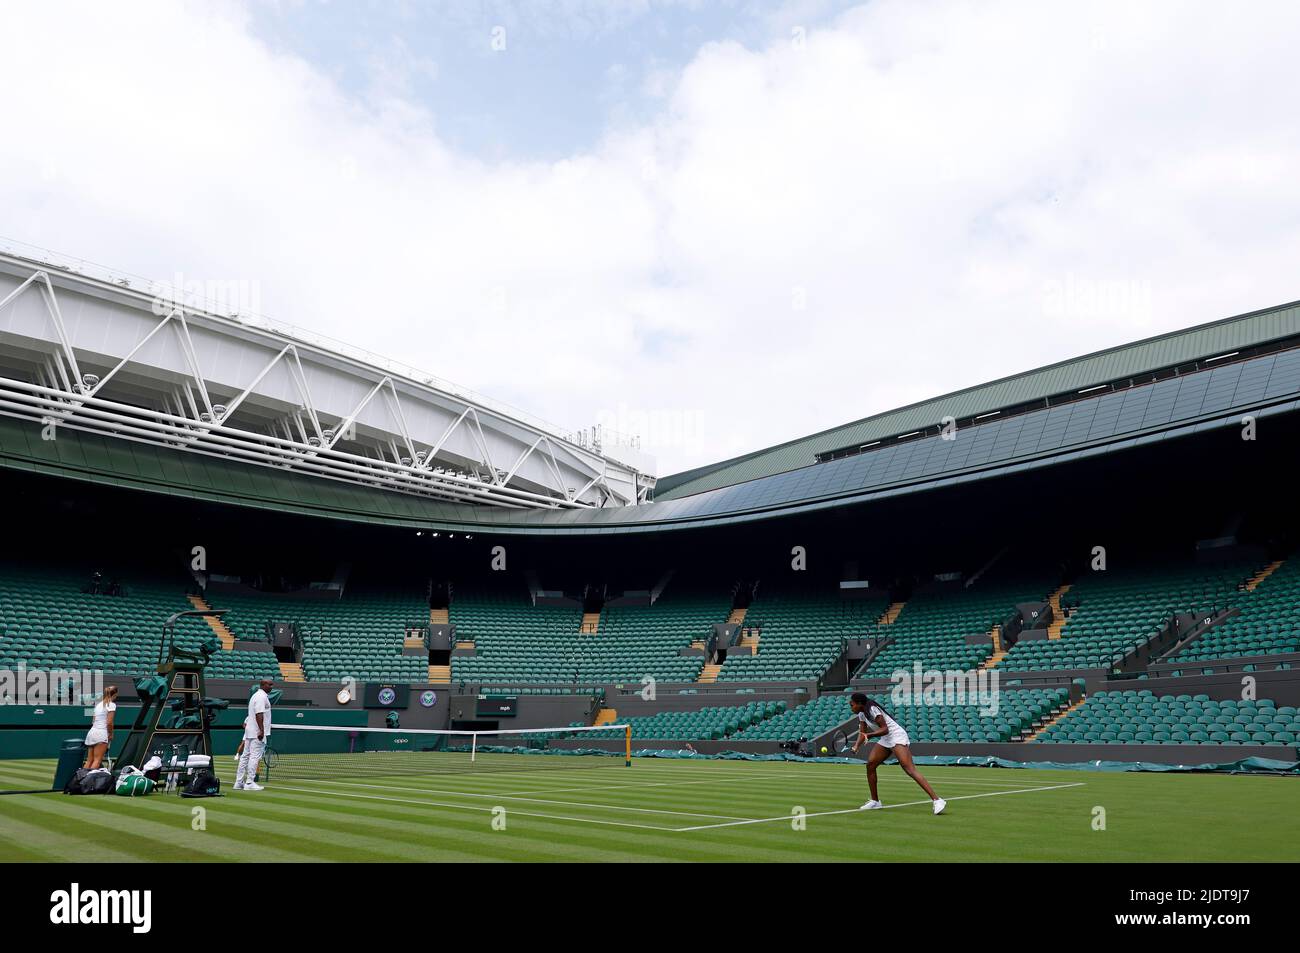 Coco Gauff übt auf Platz 1 vor der Wimbledon-Meisterschaft 2022 beim All England Lawn Tennis and Croquet Club in Wimbledon. Bilddatum: Donnerstag, 23. Juni 2022. Stockfoto